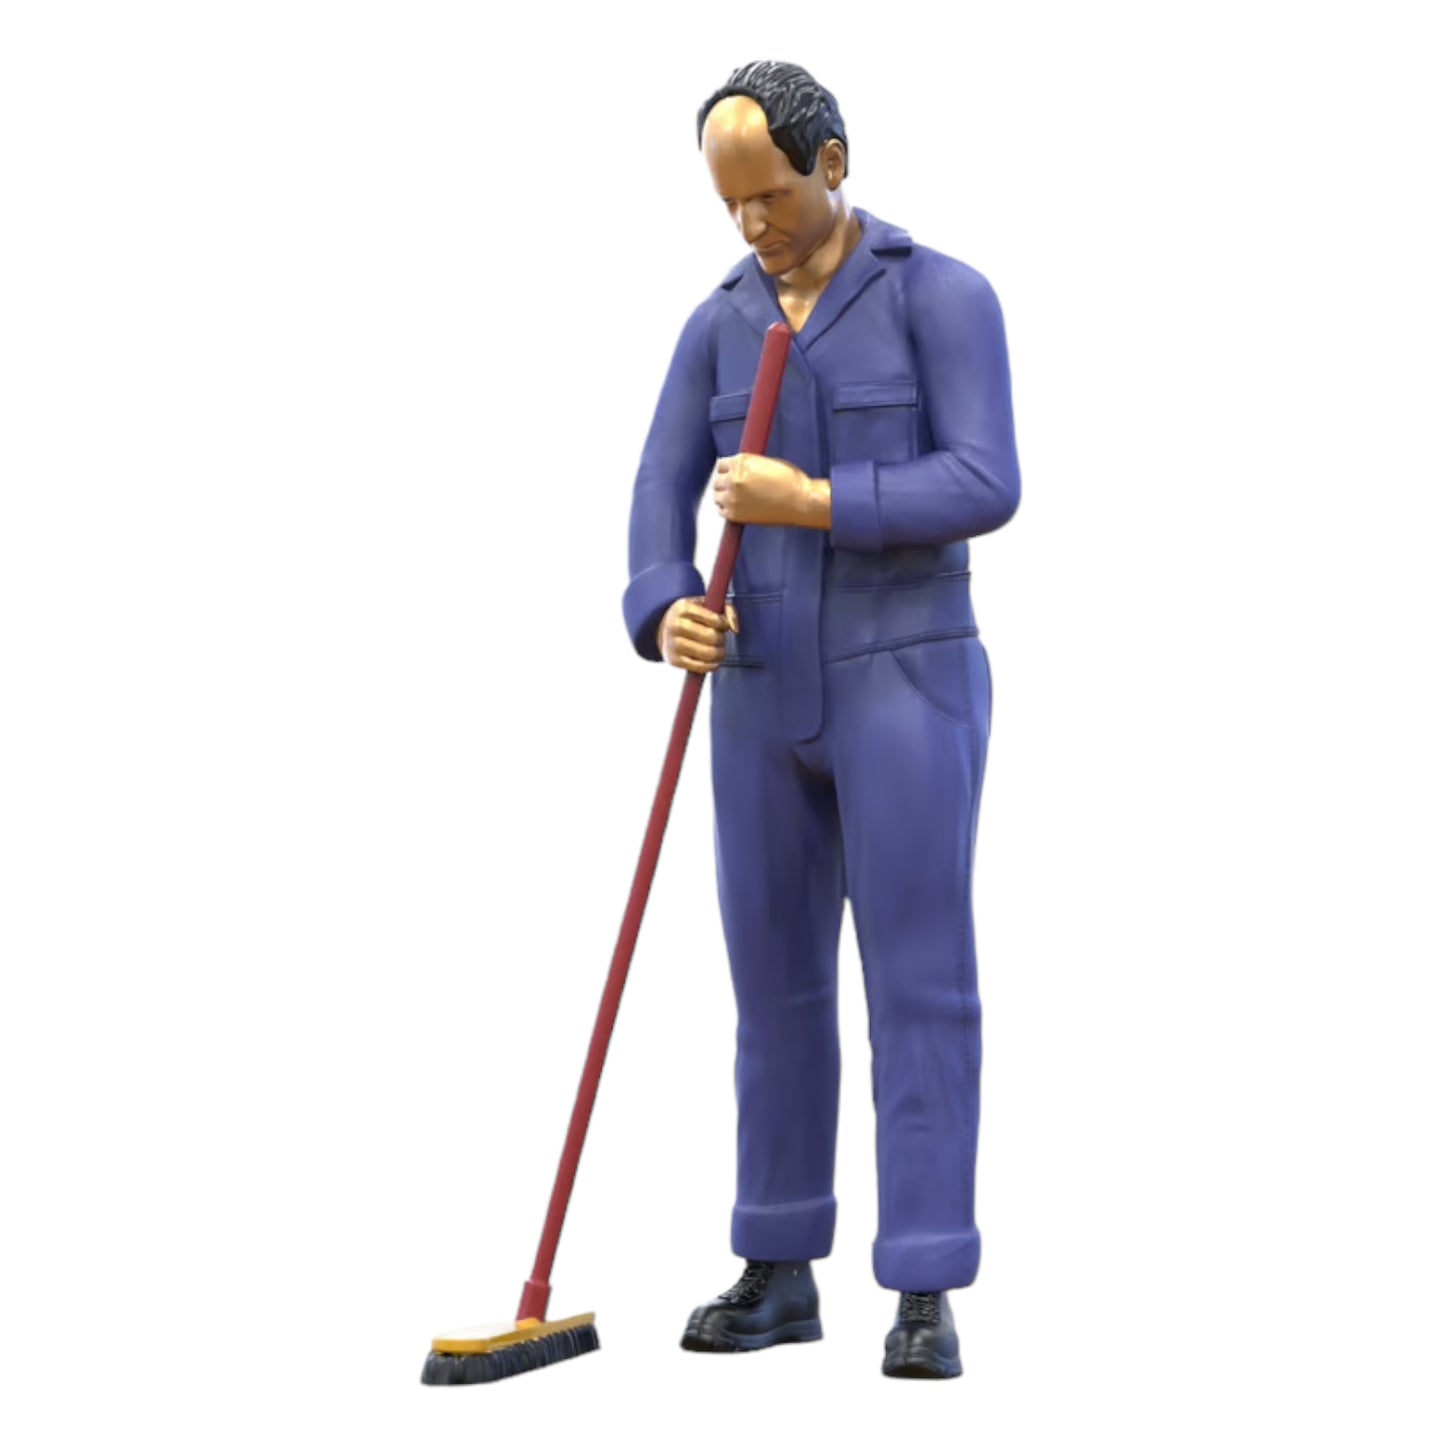 Produktfoto  0: Hausmeister oder Reinigungskraft: Mann mit Besen in Overall